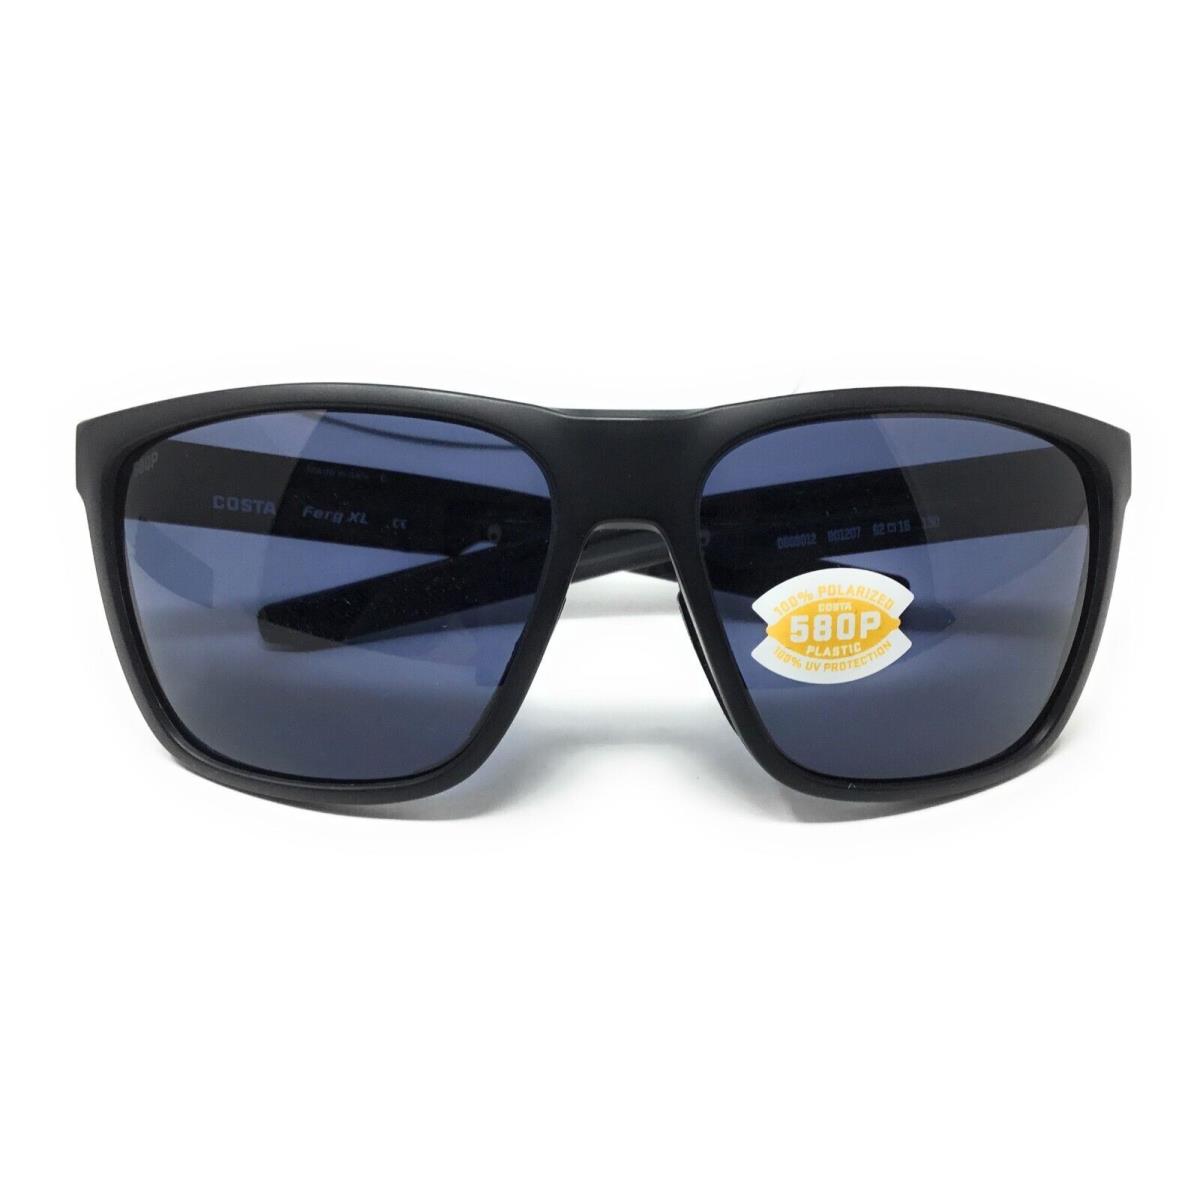 Costa Del Mar Ferg Mens Black Frame Gray Polarized Sunglasses 06S9012 901207 - Matte Black Frame, Gray Lens